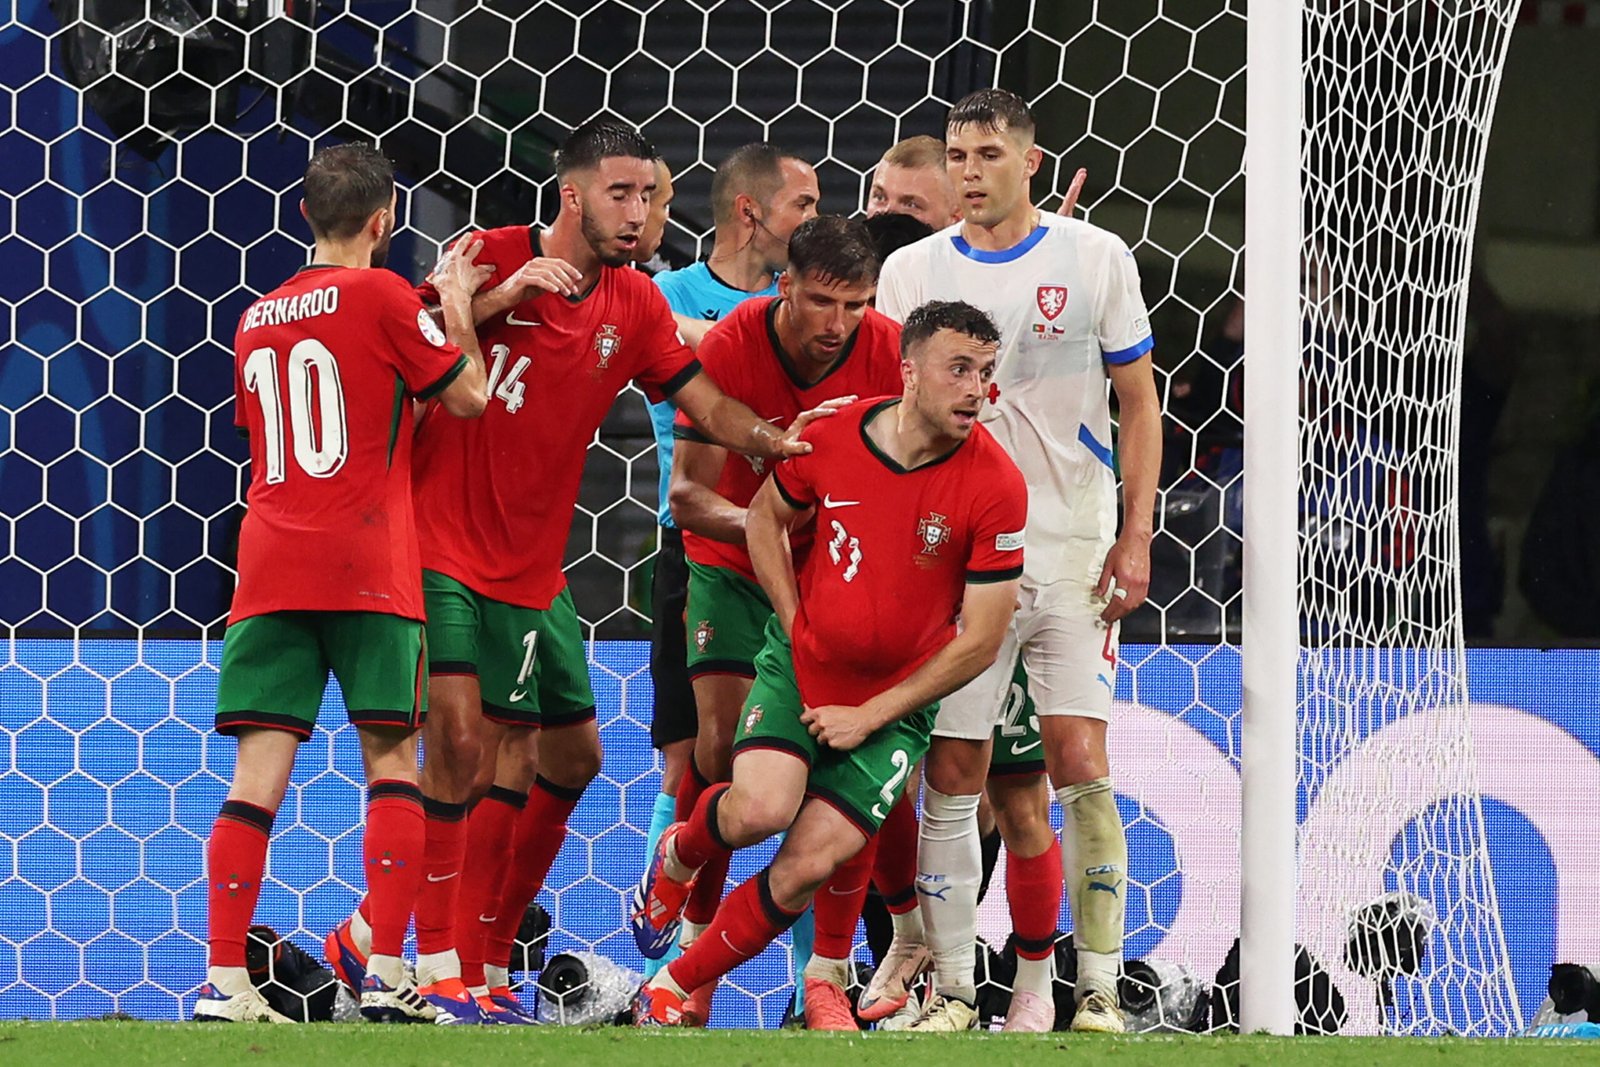 Portogallo Slovenia, Cristiano Ronaldo a caccia dei quarti: le formazioni ufficiali